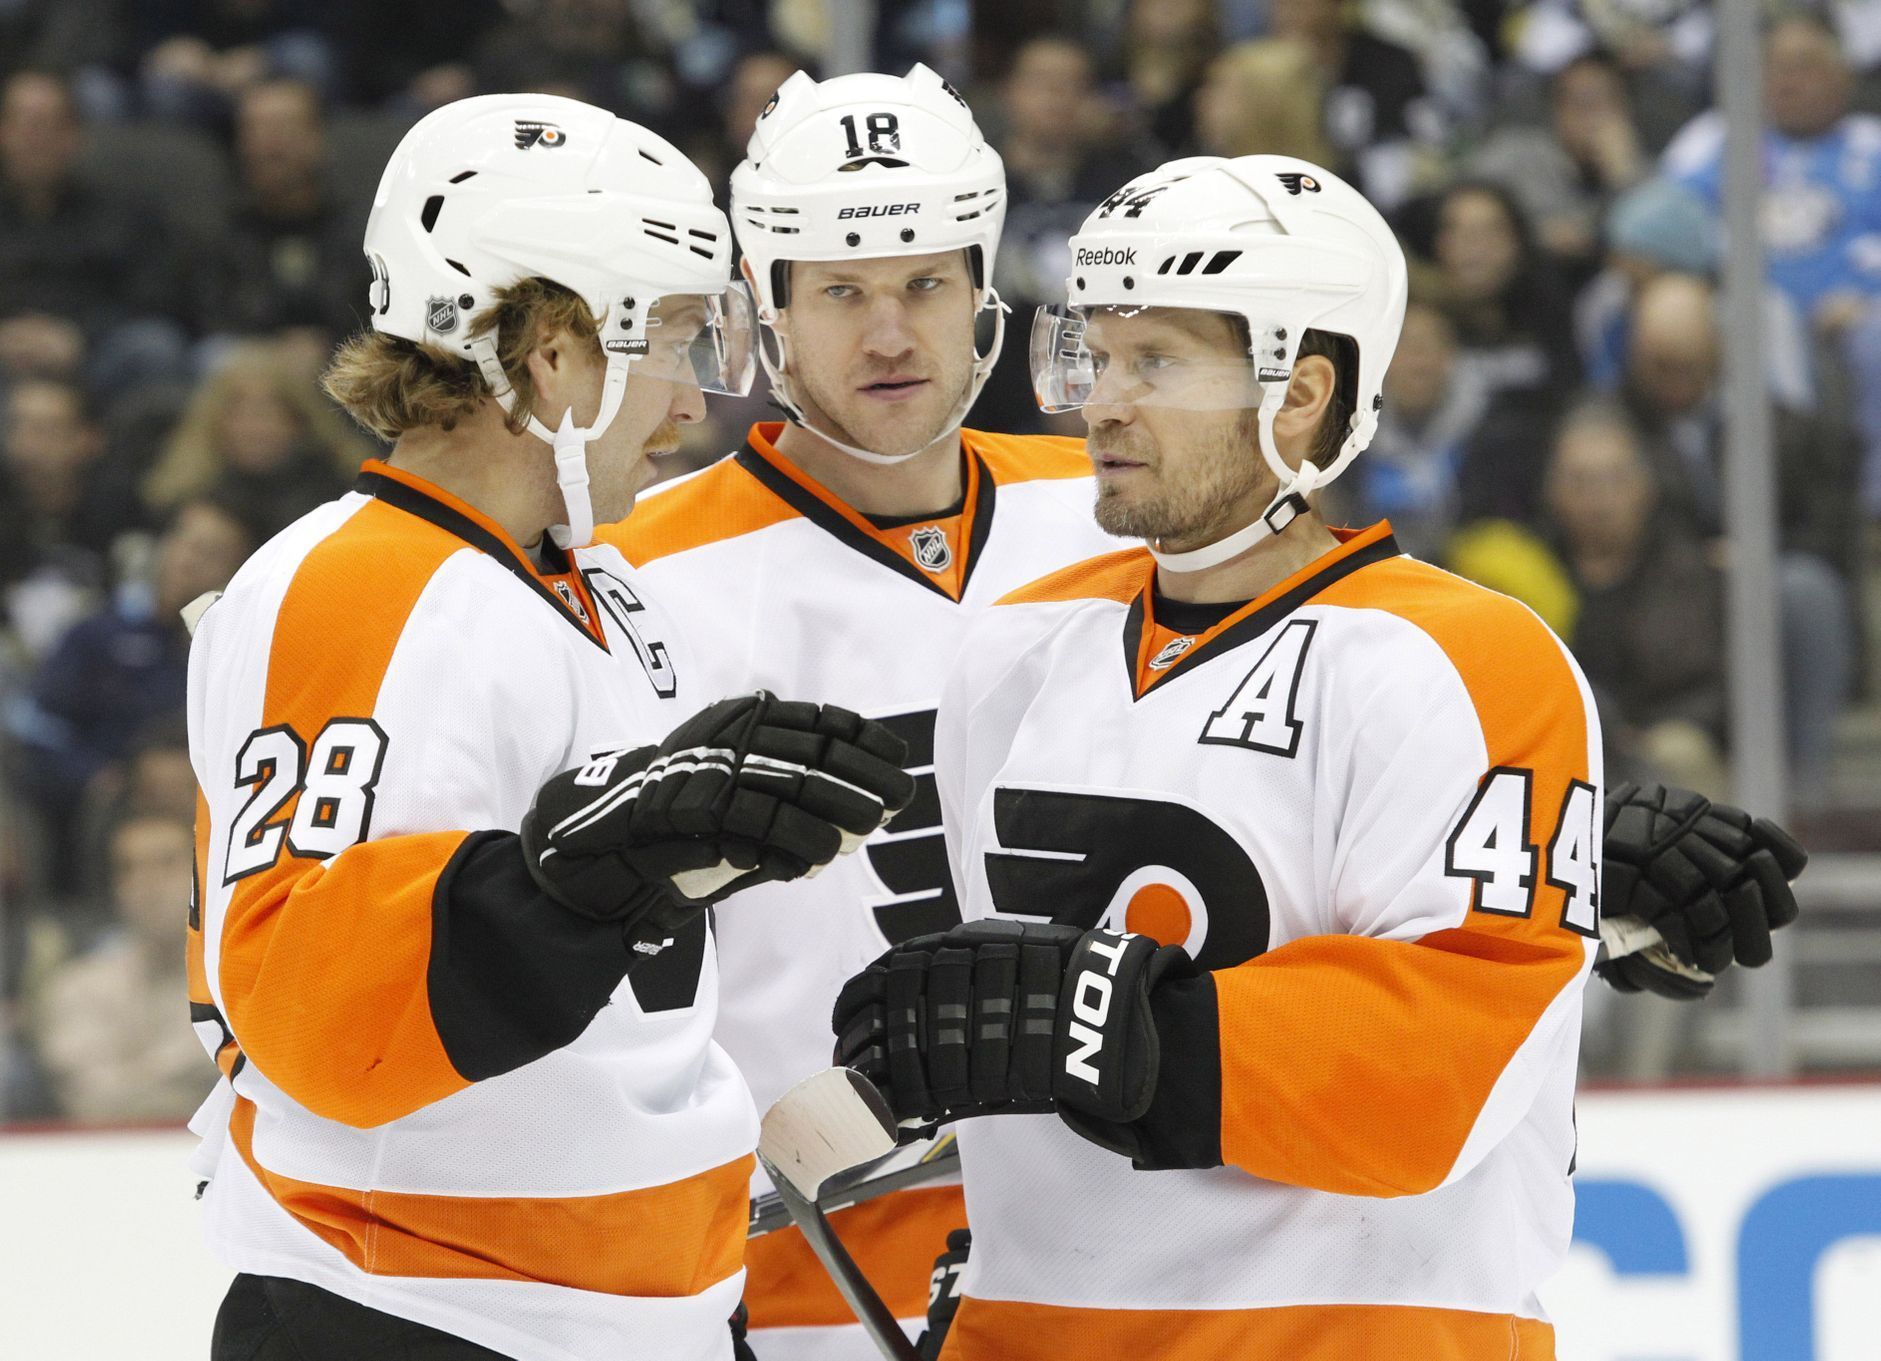 Hráči Philadelphia Flyers (Giroux, Hall, Timonen)